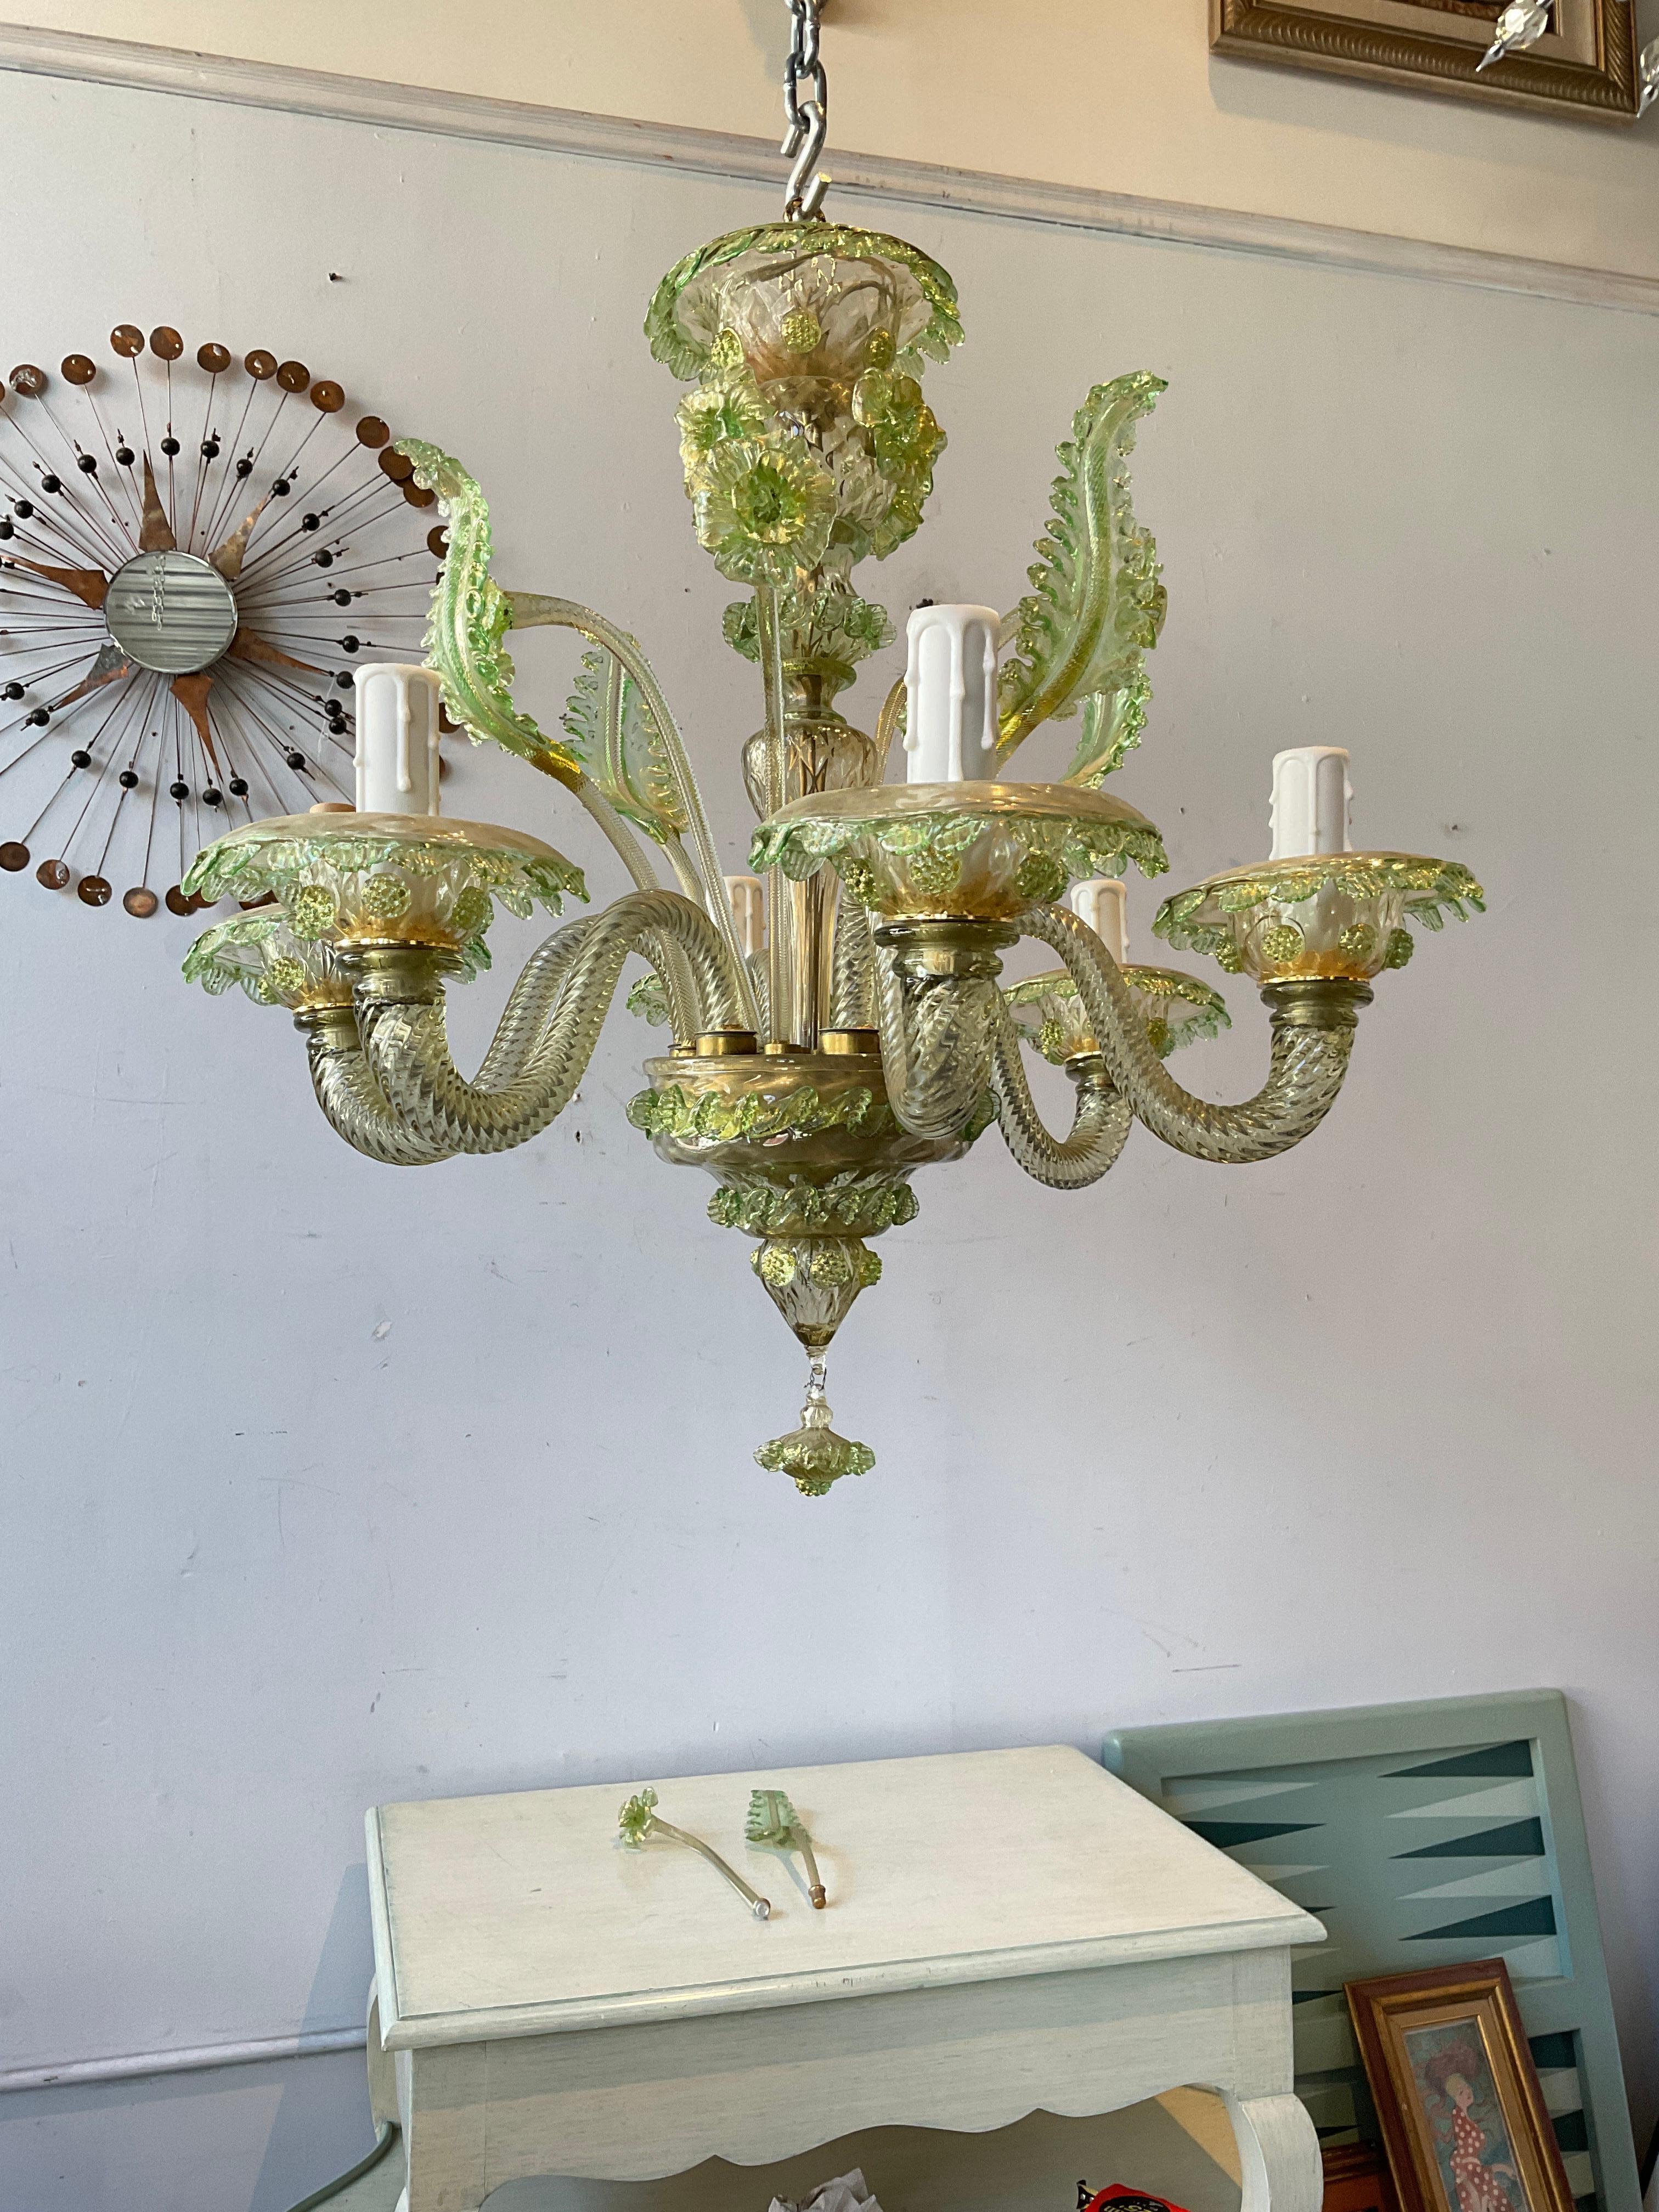 Lustre vert en verre de Murano des années 1950. A l'origine, ce lustre avait plus de tiges. Il en manque quelques-uns, de sorte que la situation est maintenant équilibrée. Il y a deux suppléments.
Le lustre a été câblé il y a environ 10 ans, il faut